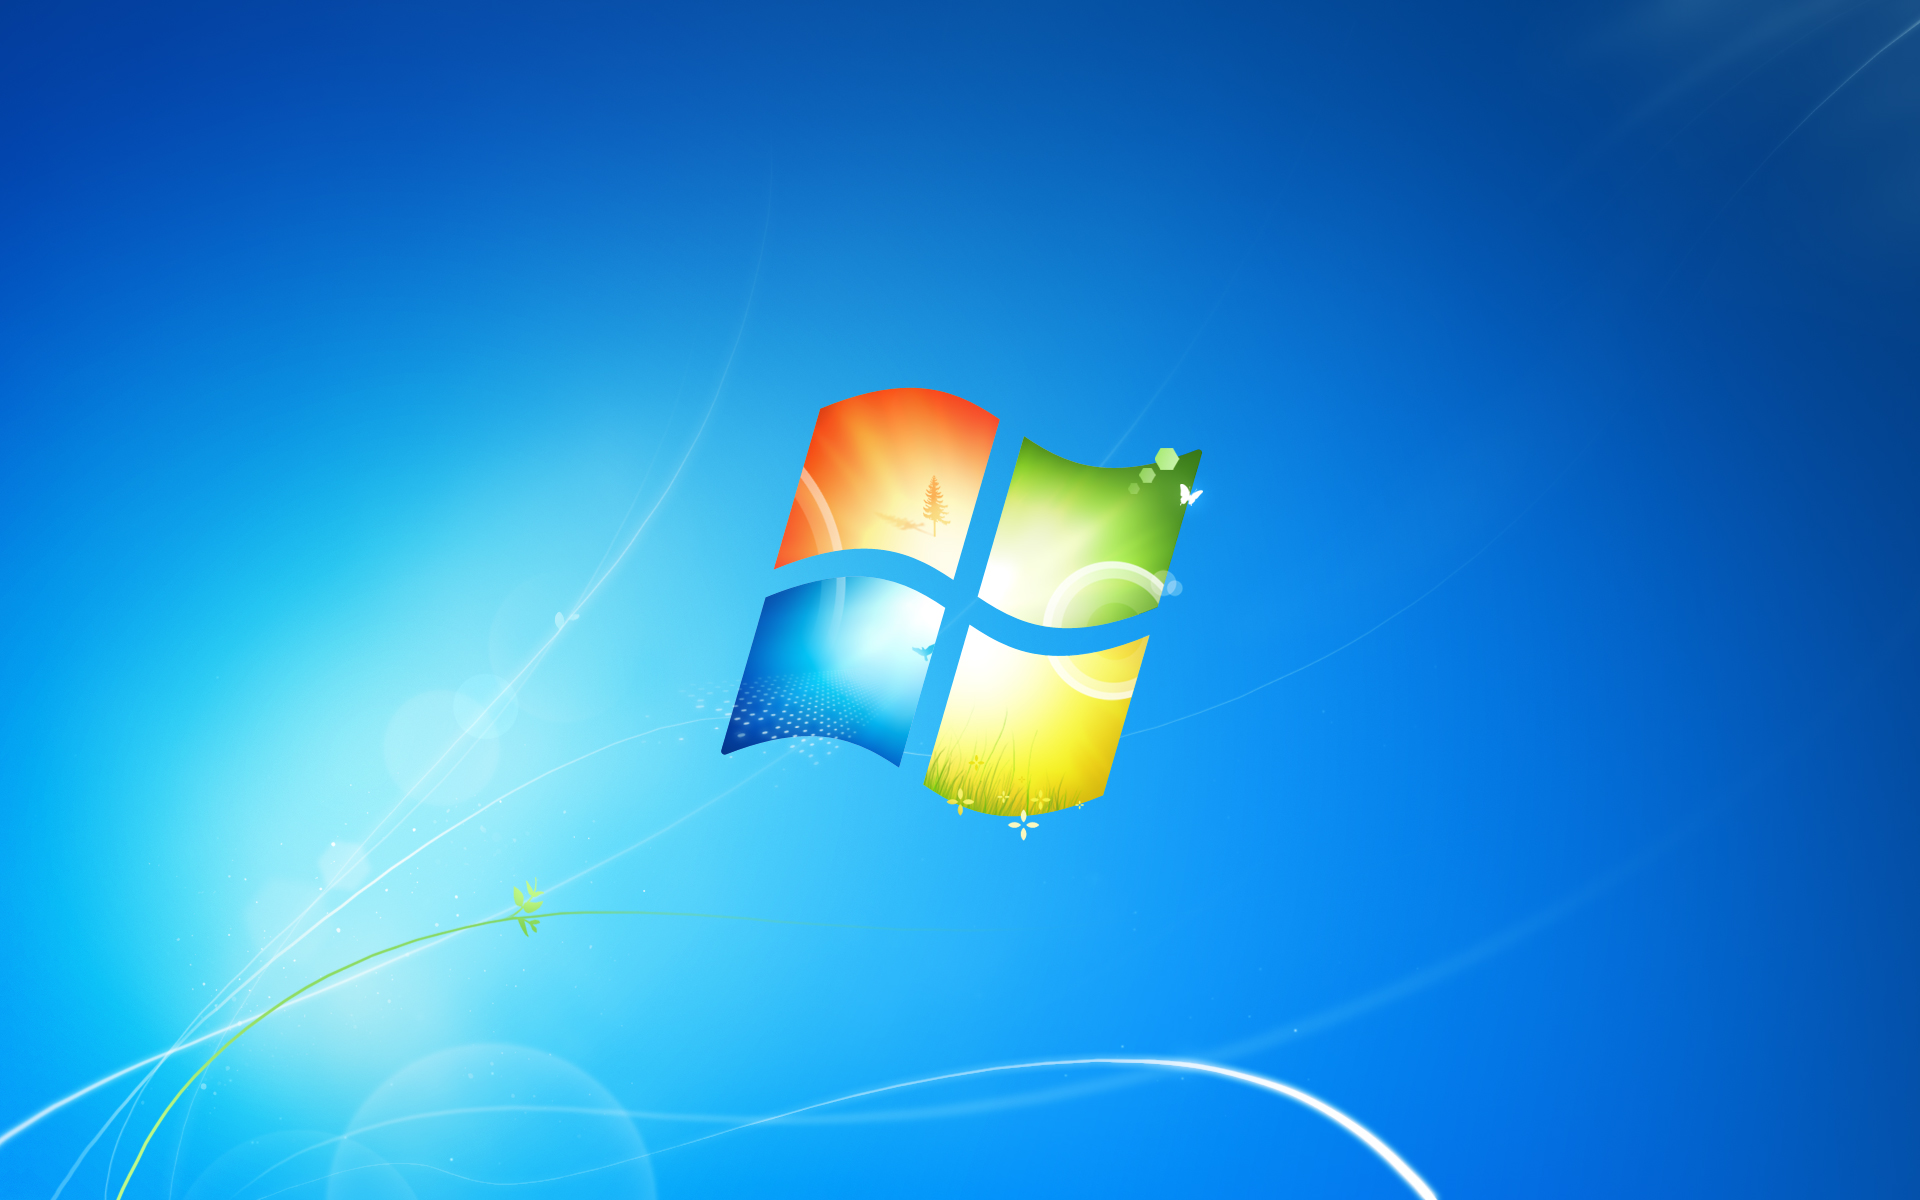 Tìm kiếm vị trí hình nền Windows 7 đúng ý mình đã trở nên dễ dàng hơn. Hãy khám phá các tùy chọn lựa chọn phù hợp nhất để cá nhân hóa màn hình của bạn. Với một vị trí hình nền ưa thích, máy tính của bạn sẽ trở nên đặc biệt hơn bao giờ hết.